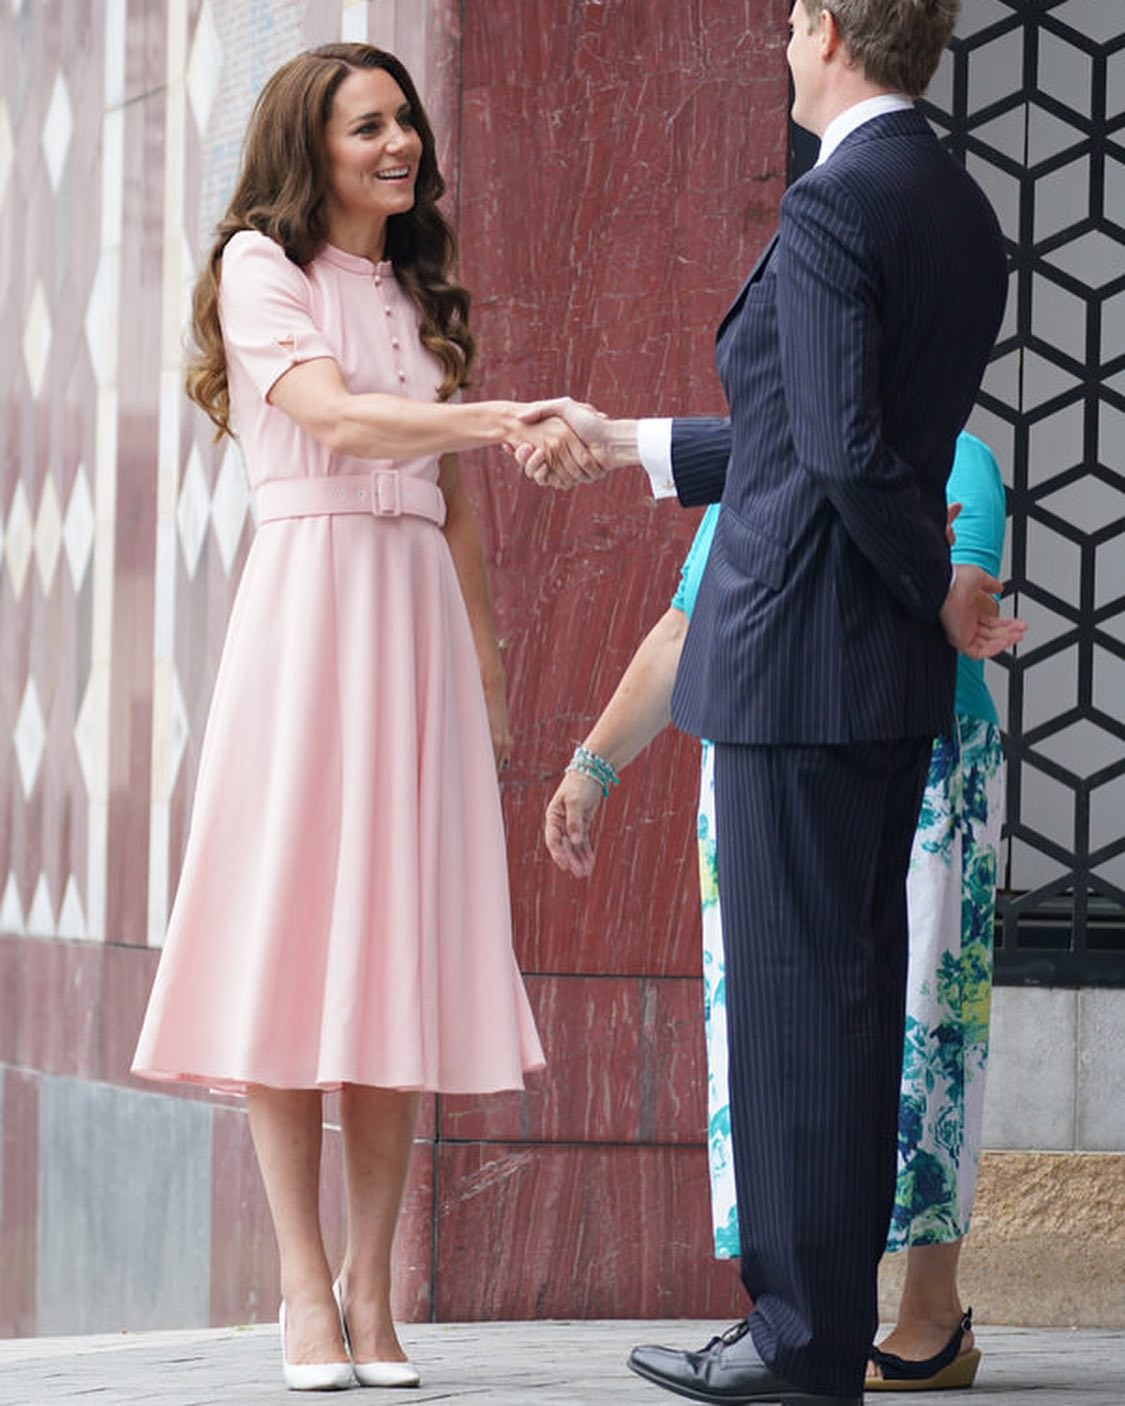 Принцесса Кейт Миддлтон очаровала публику в нежно-розовом платье своего любимого фасона